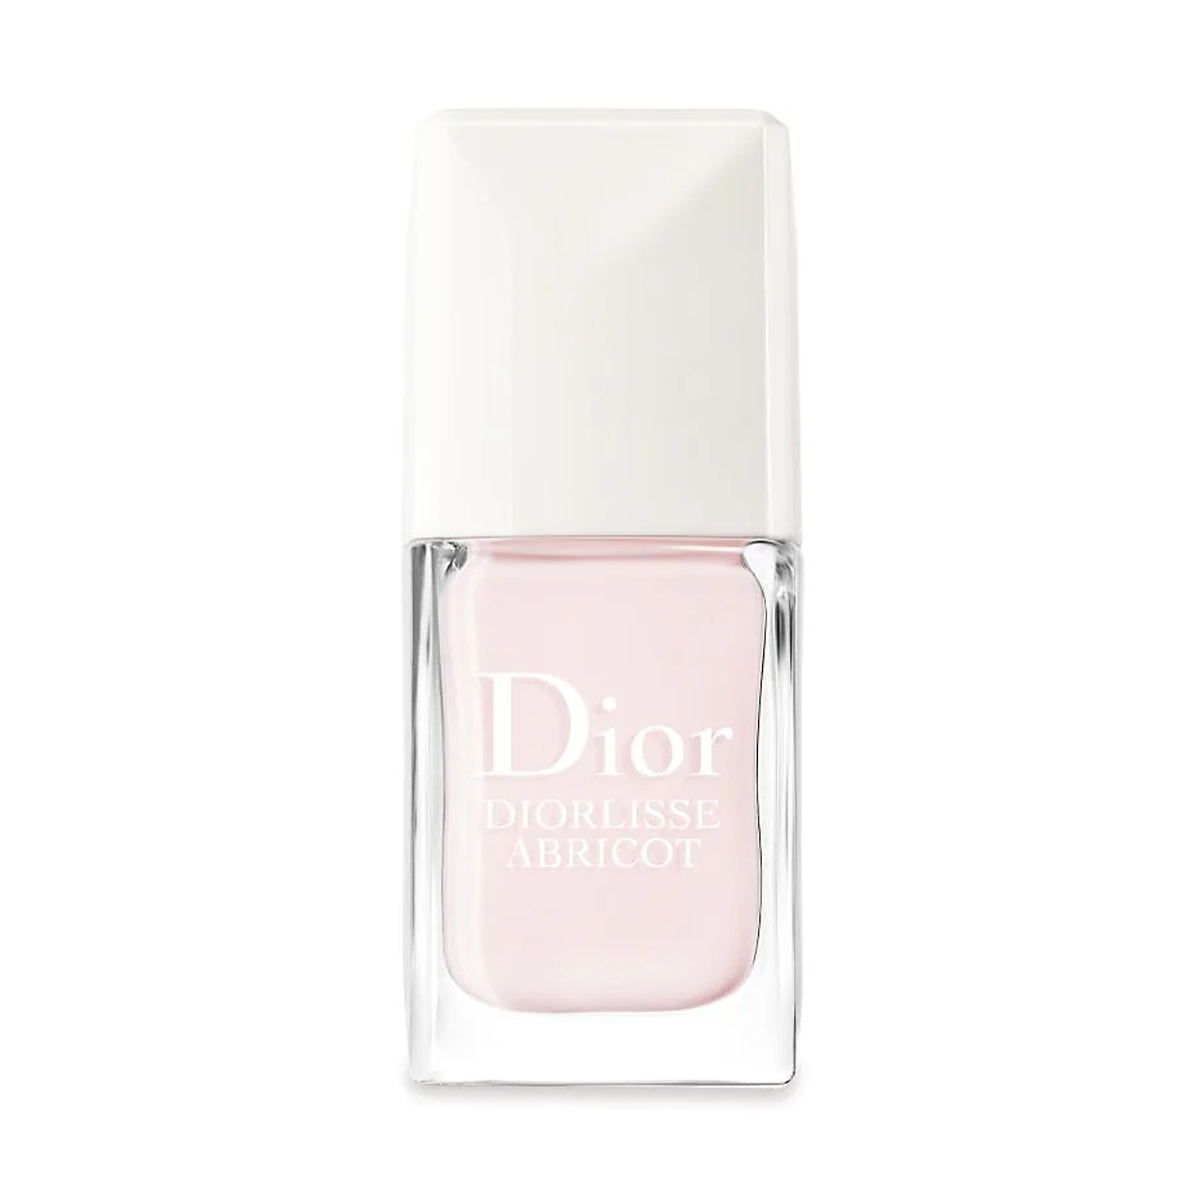 Dior Diorlisse Abricot Nail Polish in Petal Pink